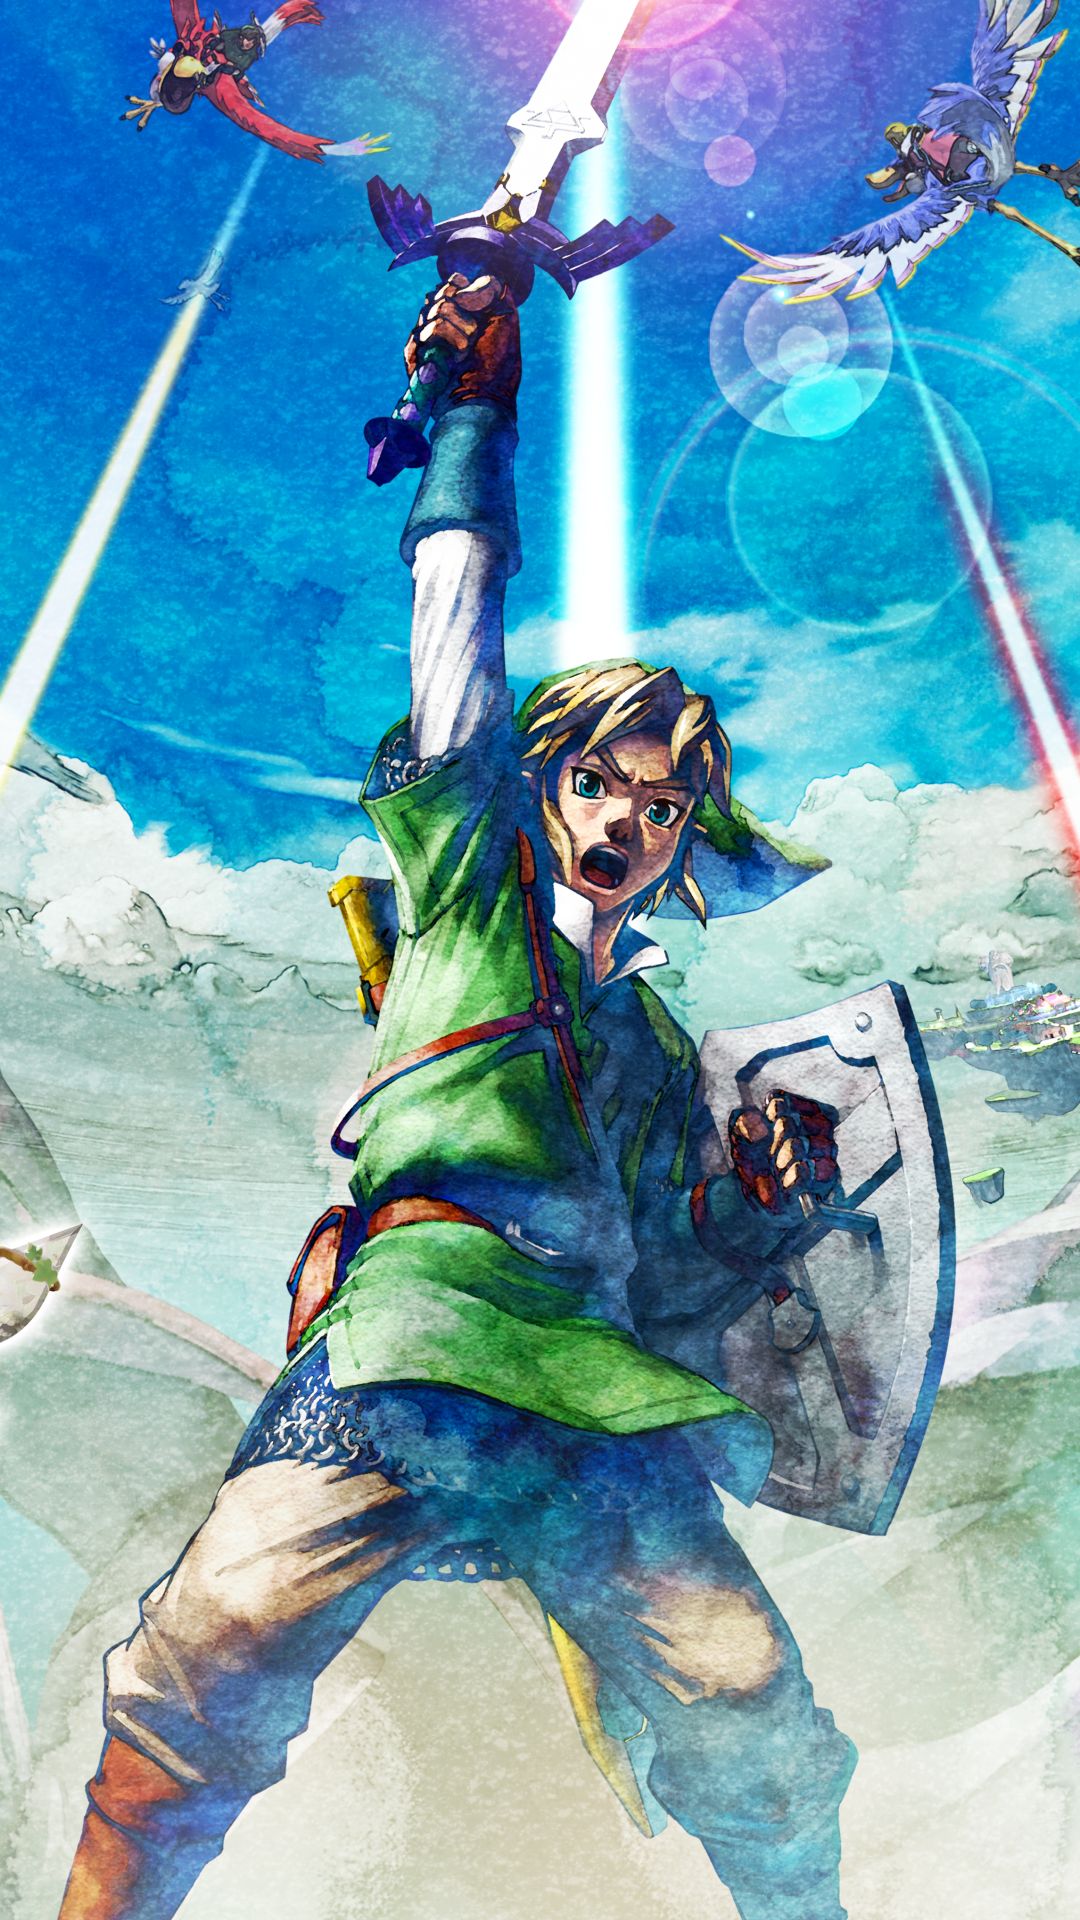 Meilleurs fonds d'écran La Légende De Zelda : Skyward Sword Hd pour l'écran du téléphone